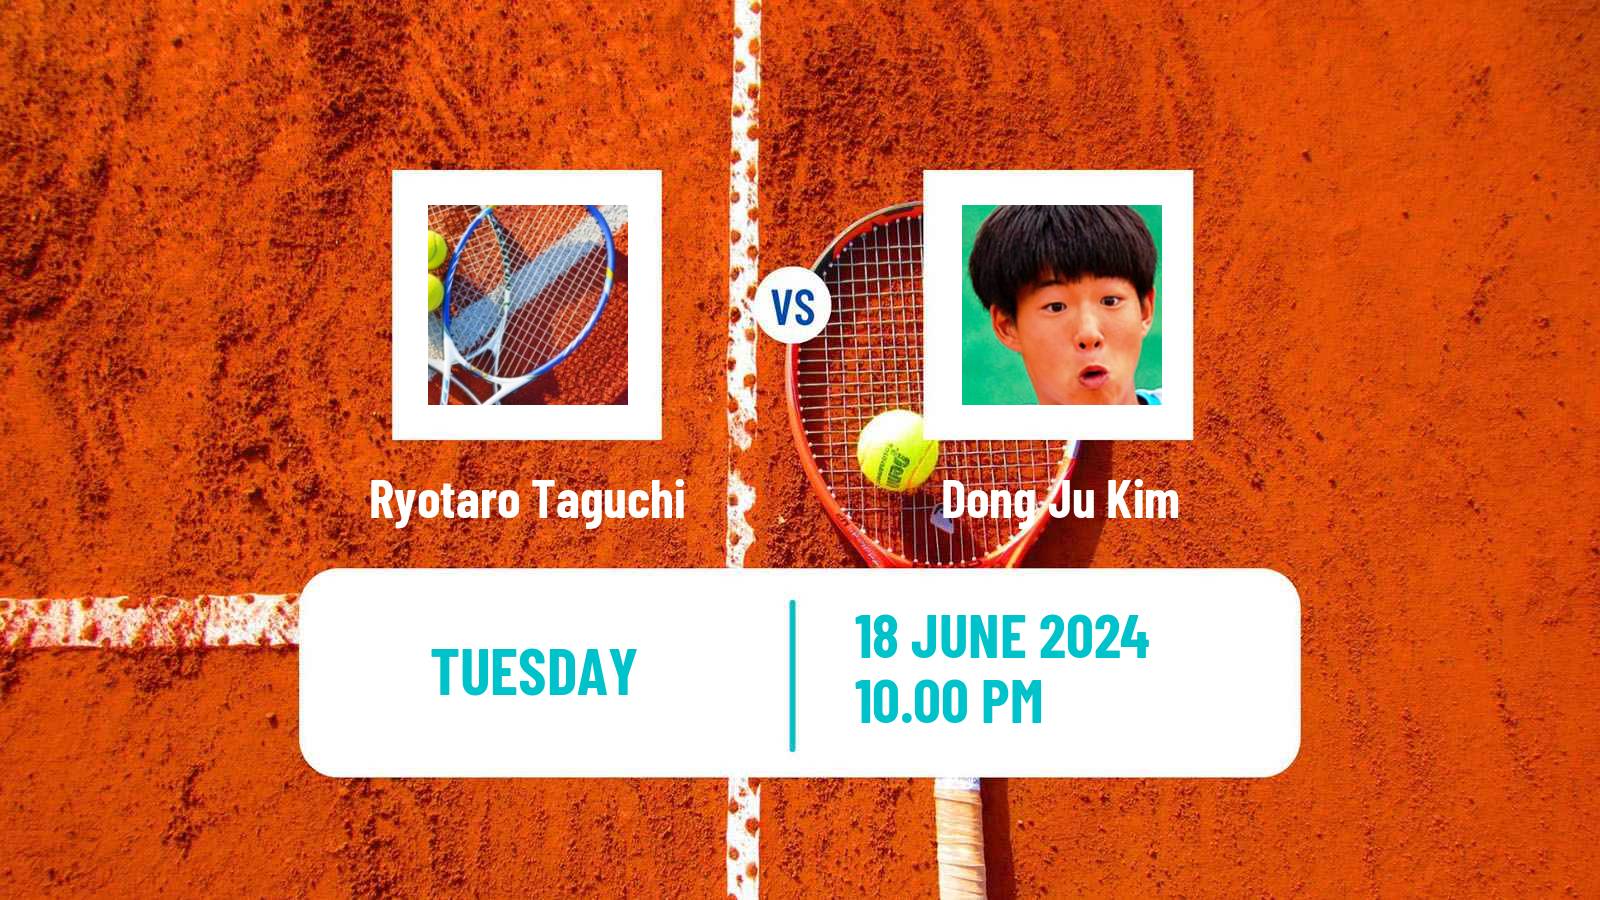 Tennis ITF M25 Changwon Men Ryotaro Taguchi - Dong Ju Kim